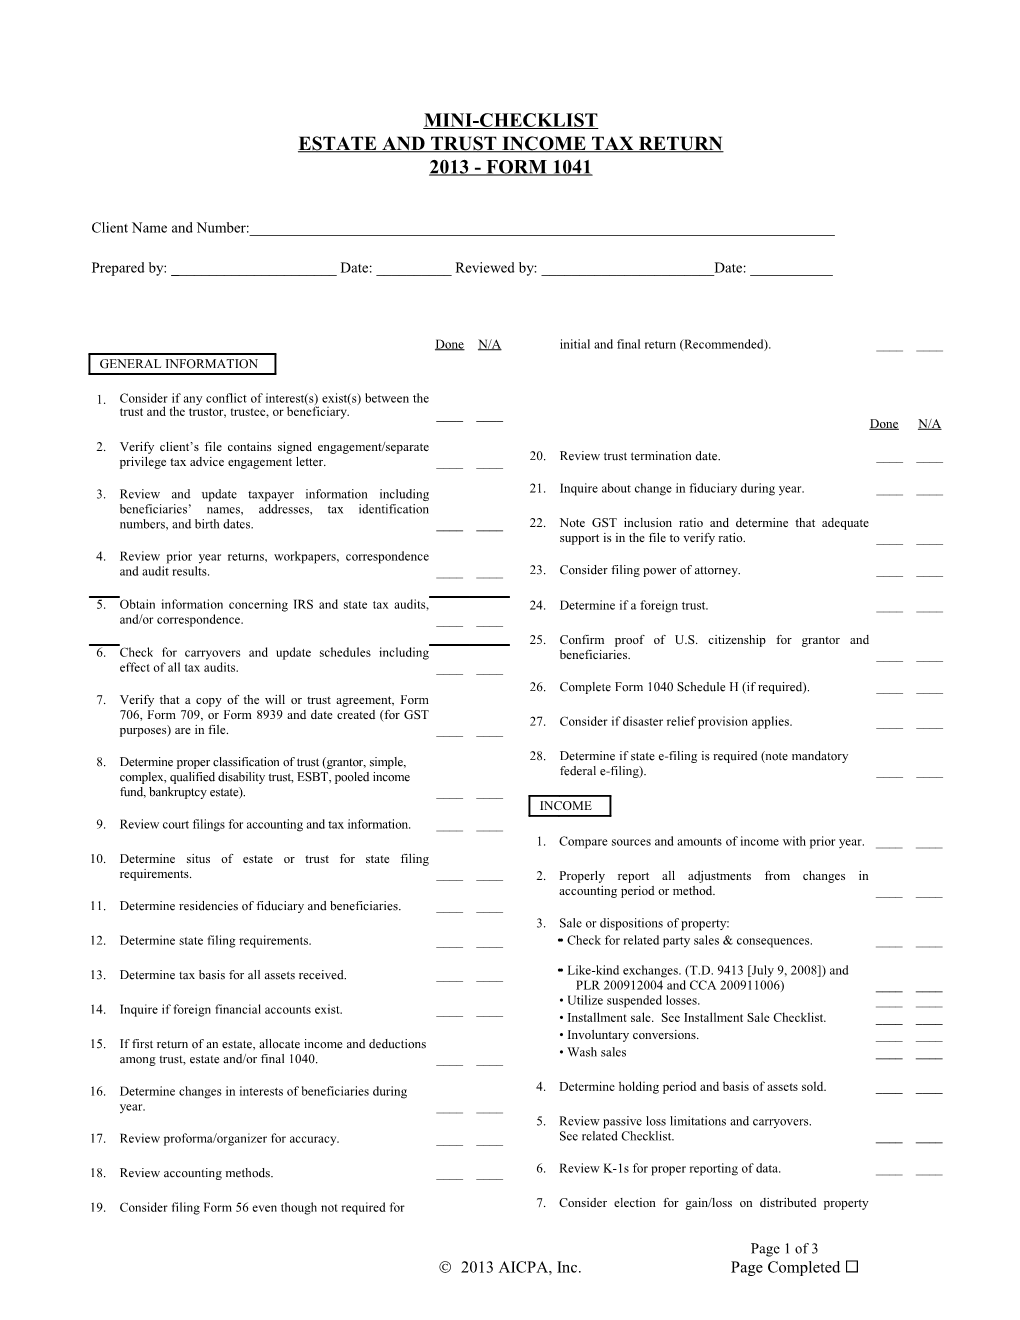 Form 1041, Income Tax Return for Trusts and Estates Mini Checklist